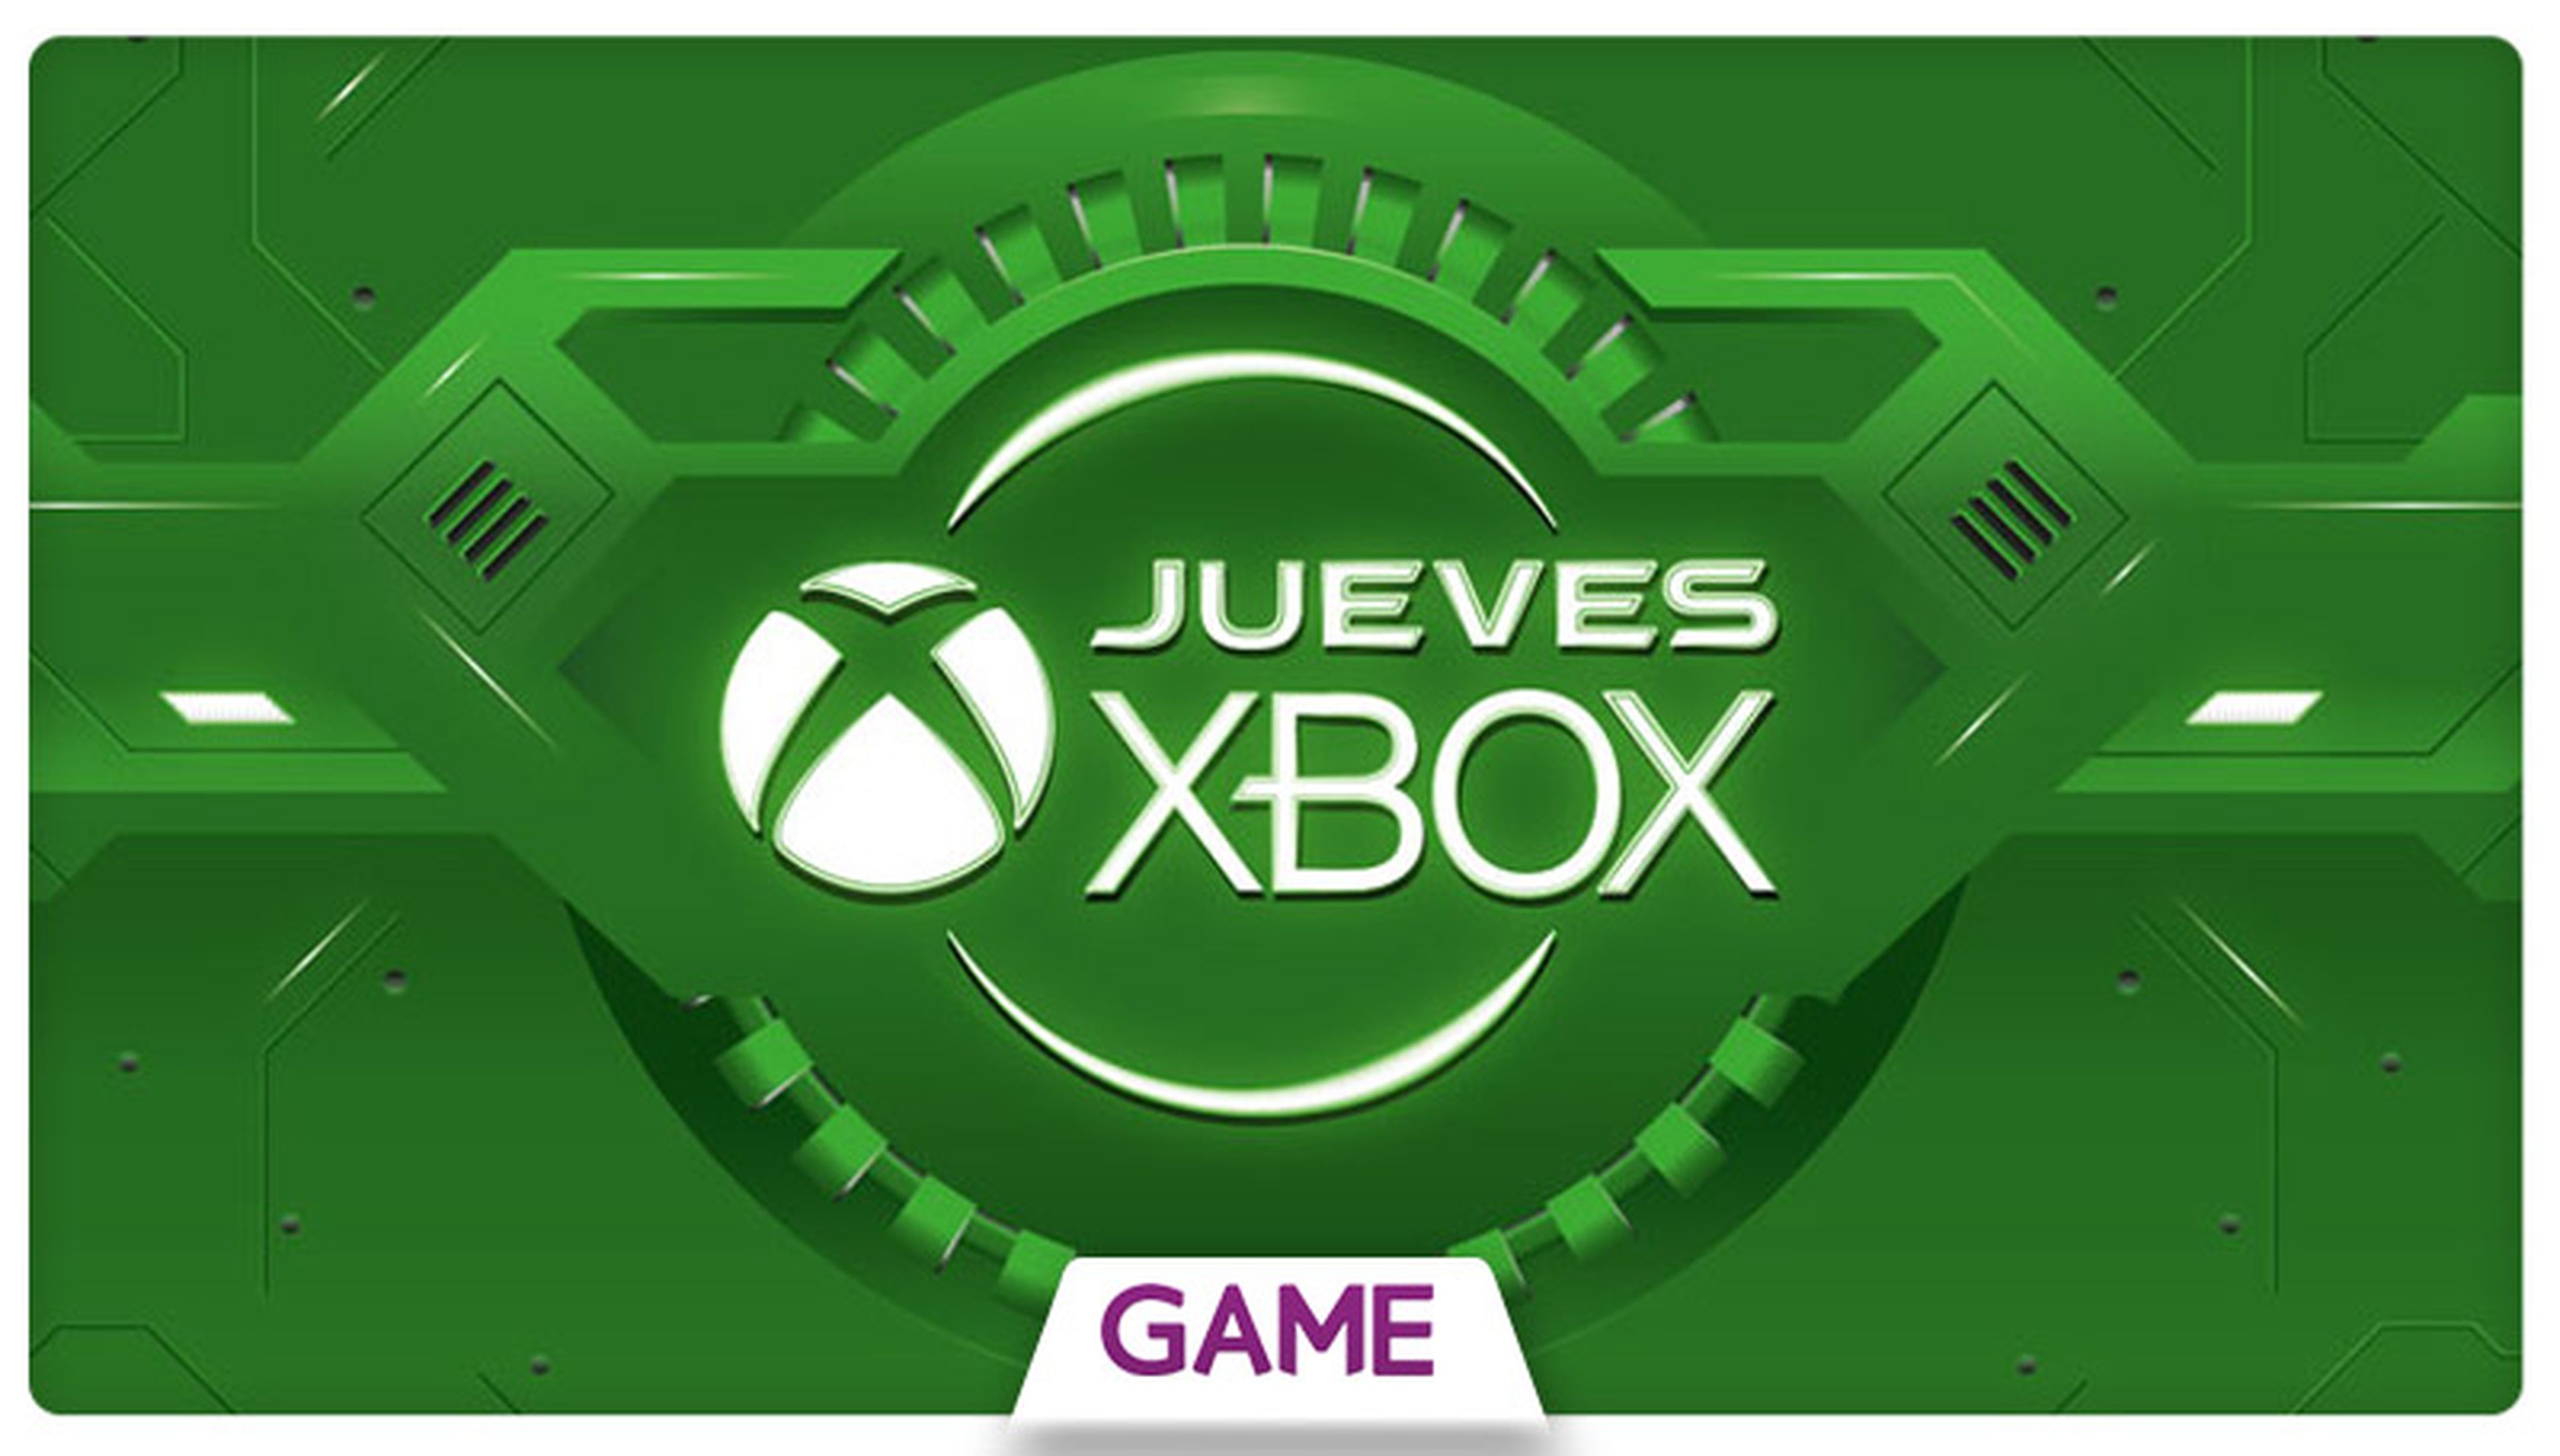 Jueves Xbox en GAME: Ofertas del 28/01/2016